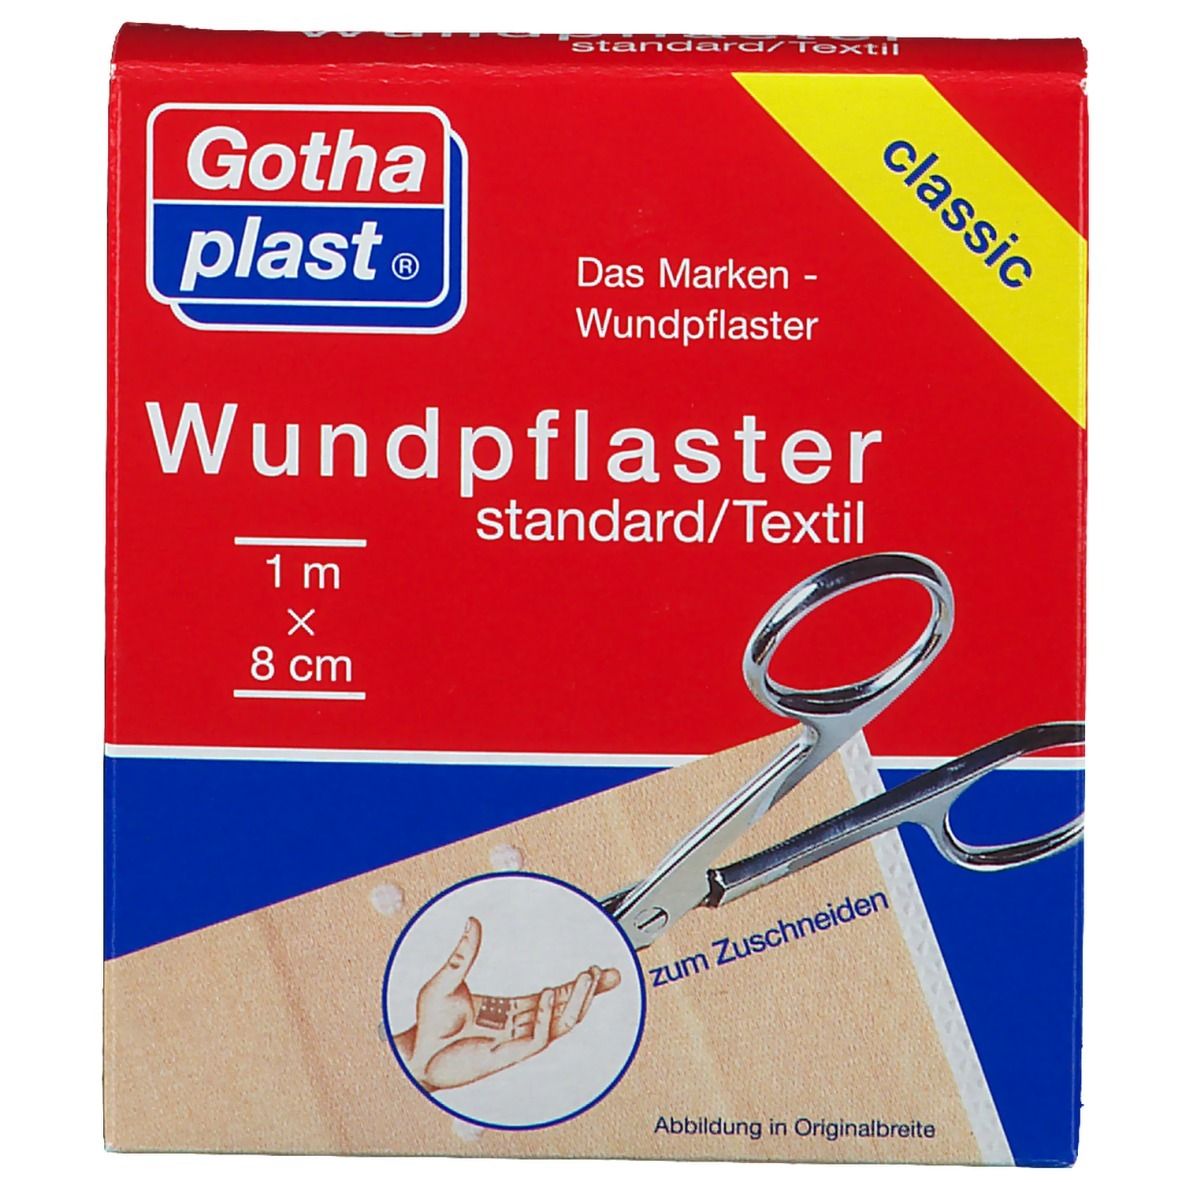 Gothaplast® Wundpflaster standard 1 m x 8 cm